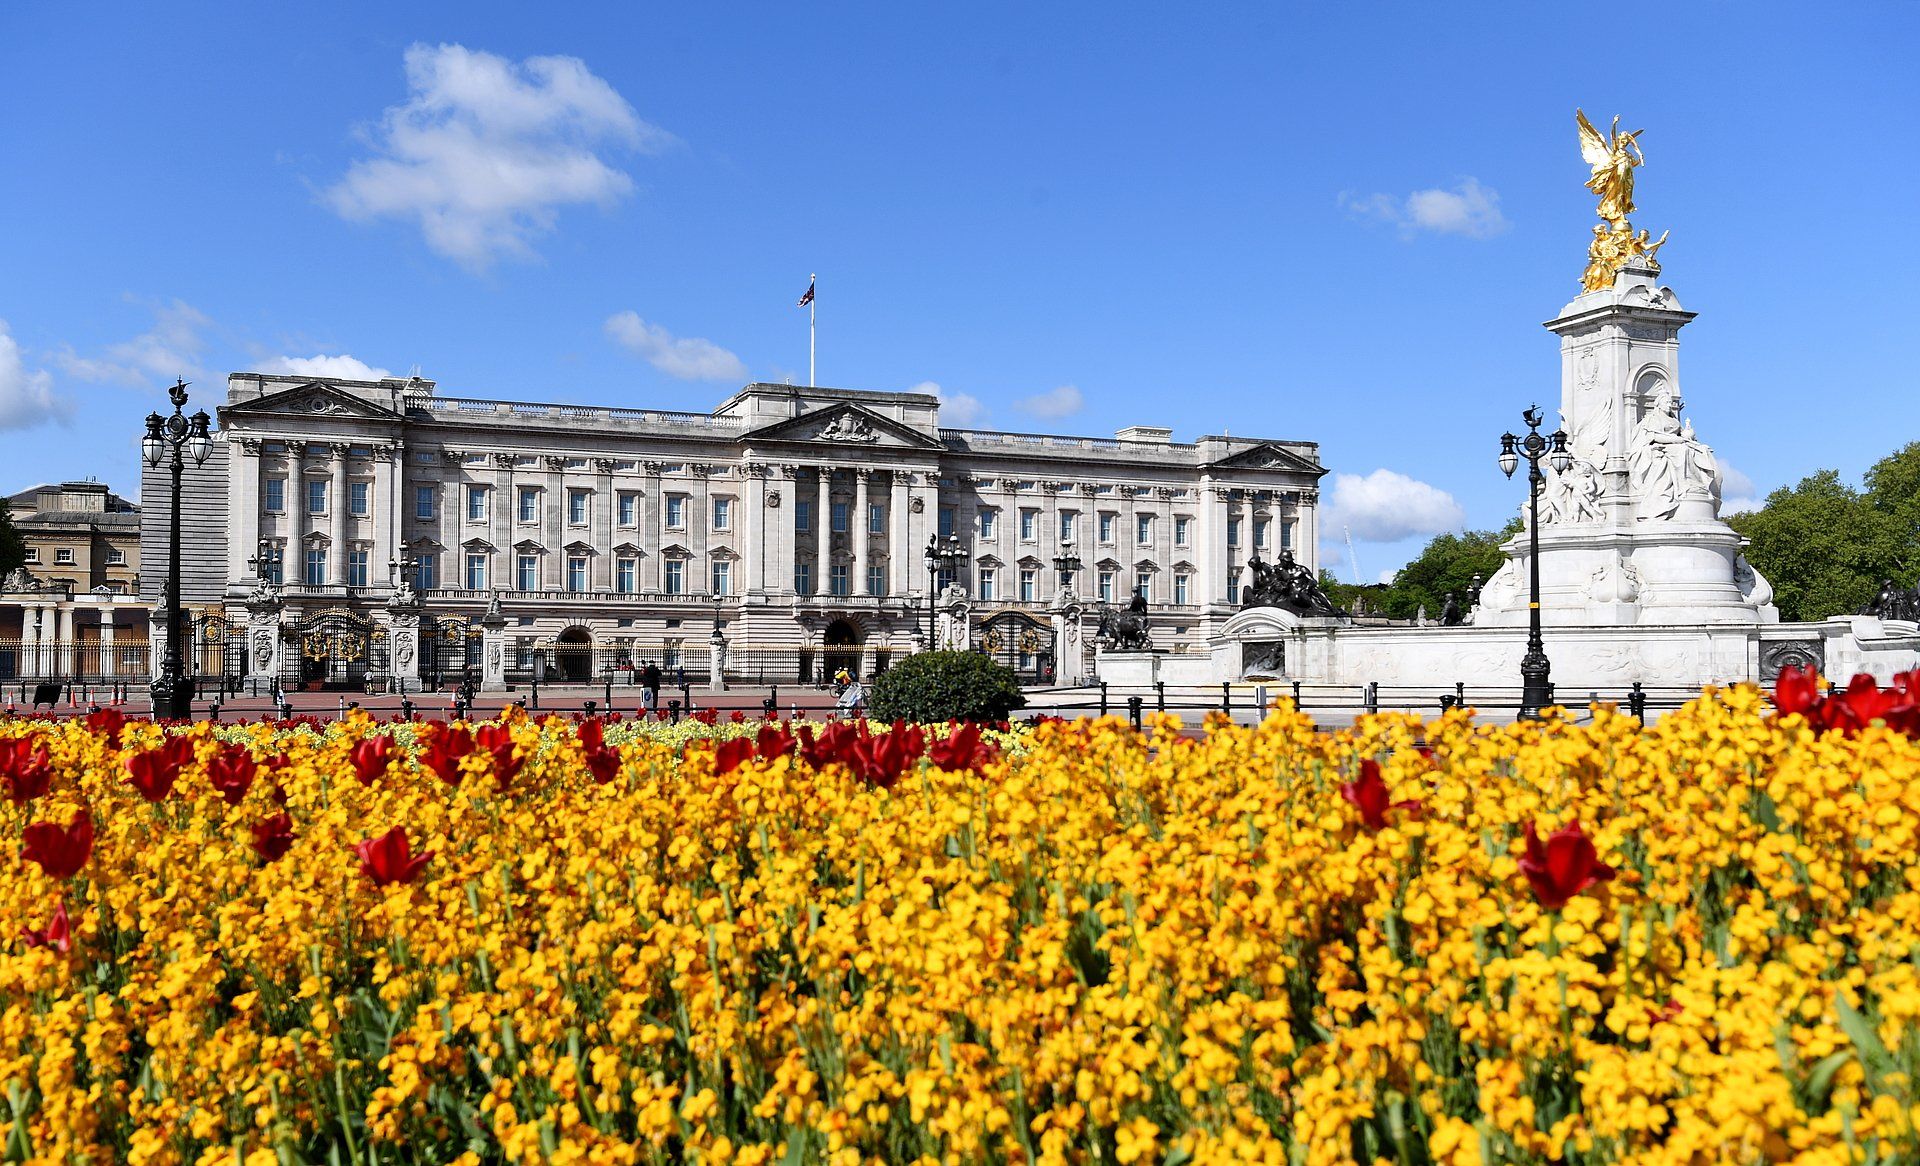 Het budget dat bestemd is voor reparaties aan Buckingham Palace zal een tekort van 20 miljoen pond